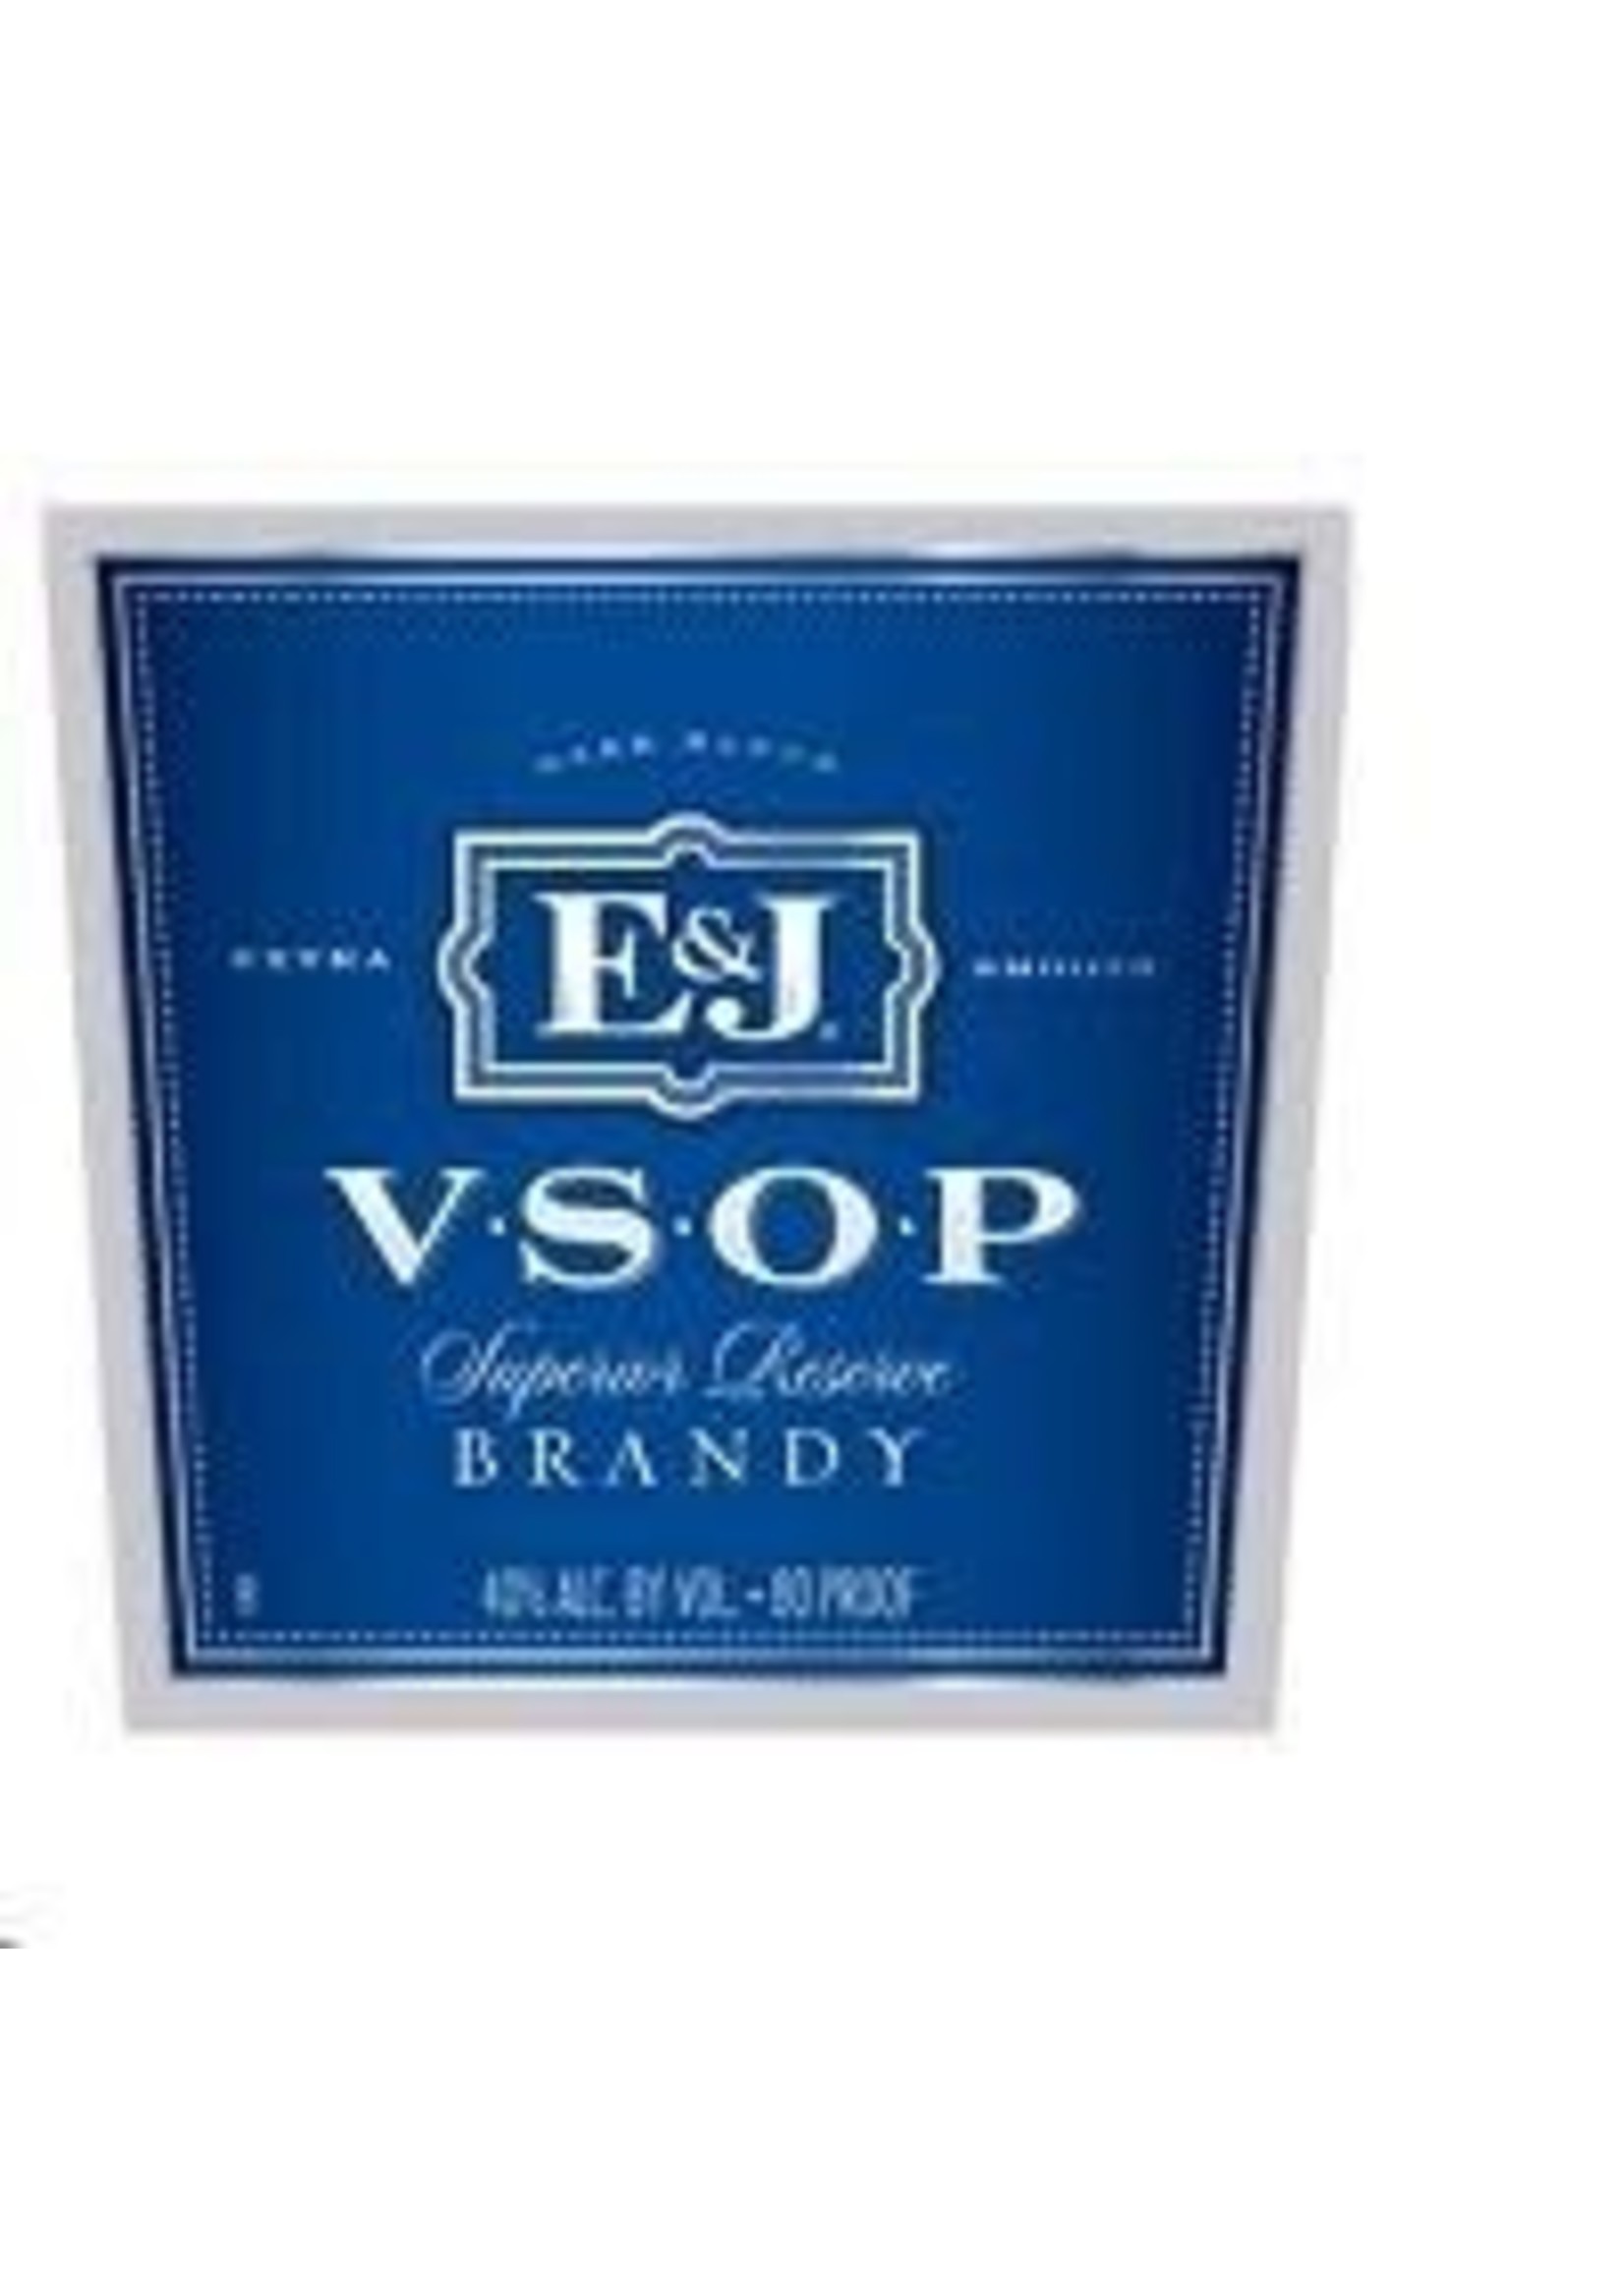 E & J E & J / Brandy VSOP